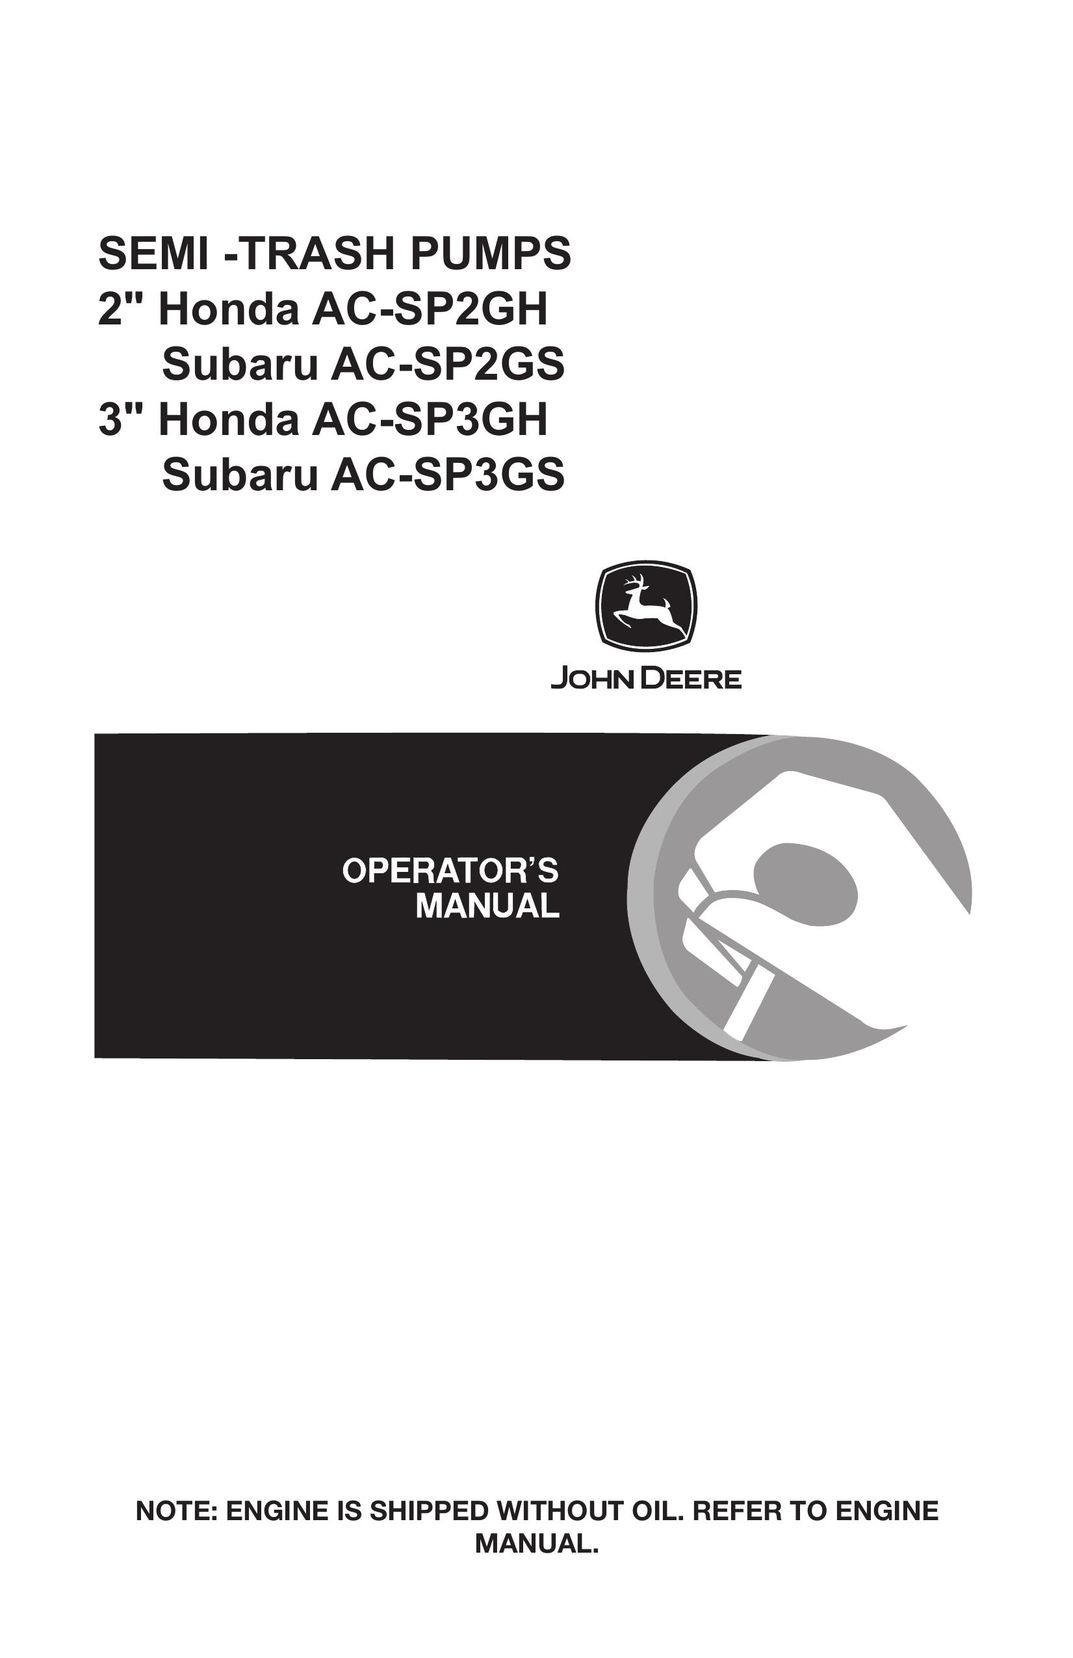 John Deere AC-SP3GH Water Pump User Manual